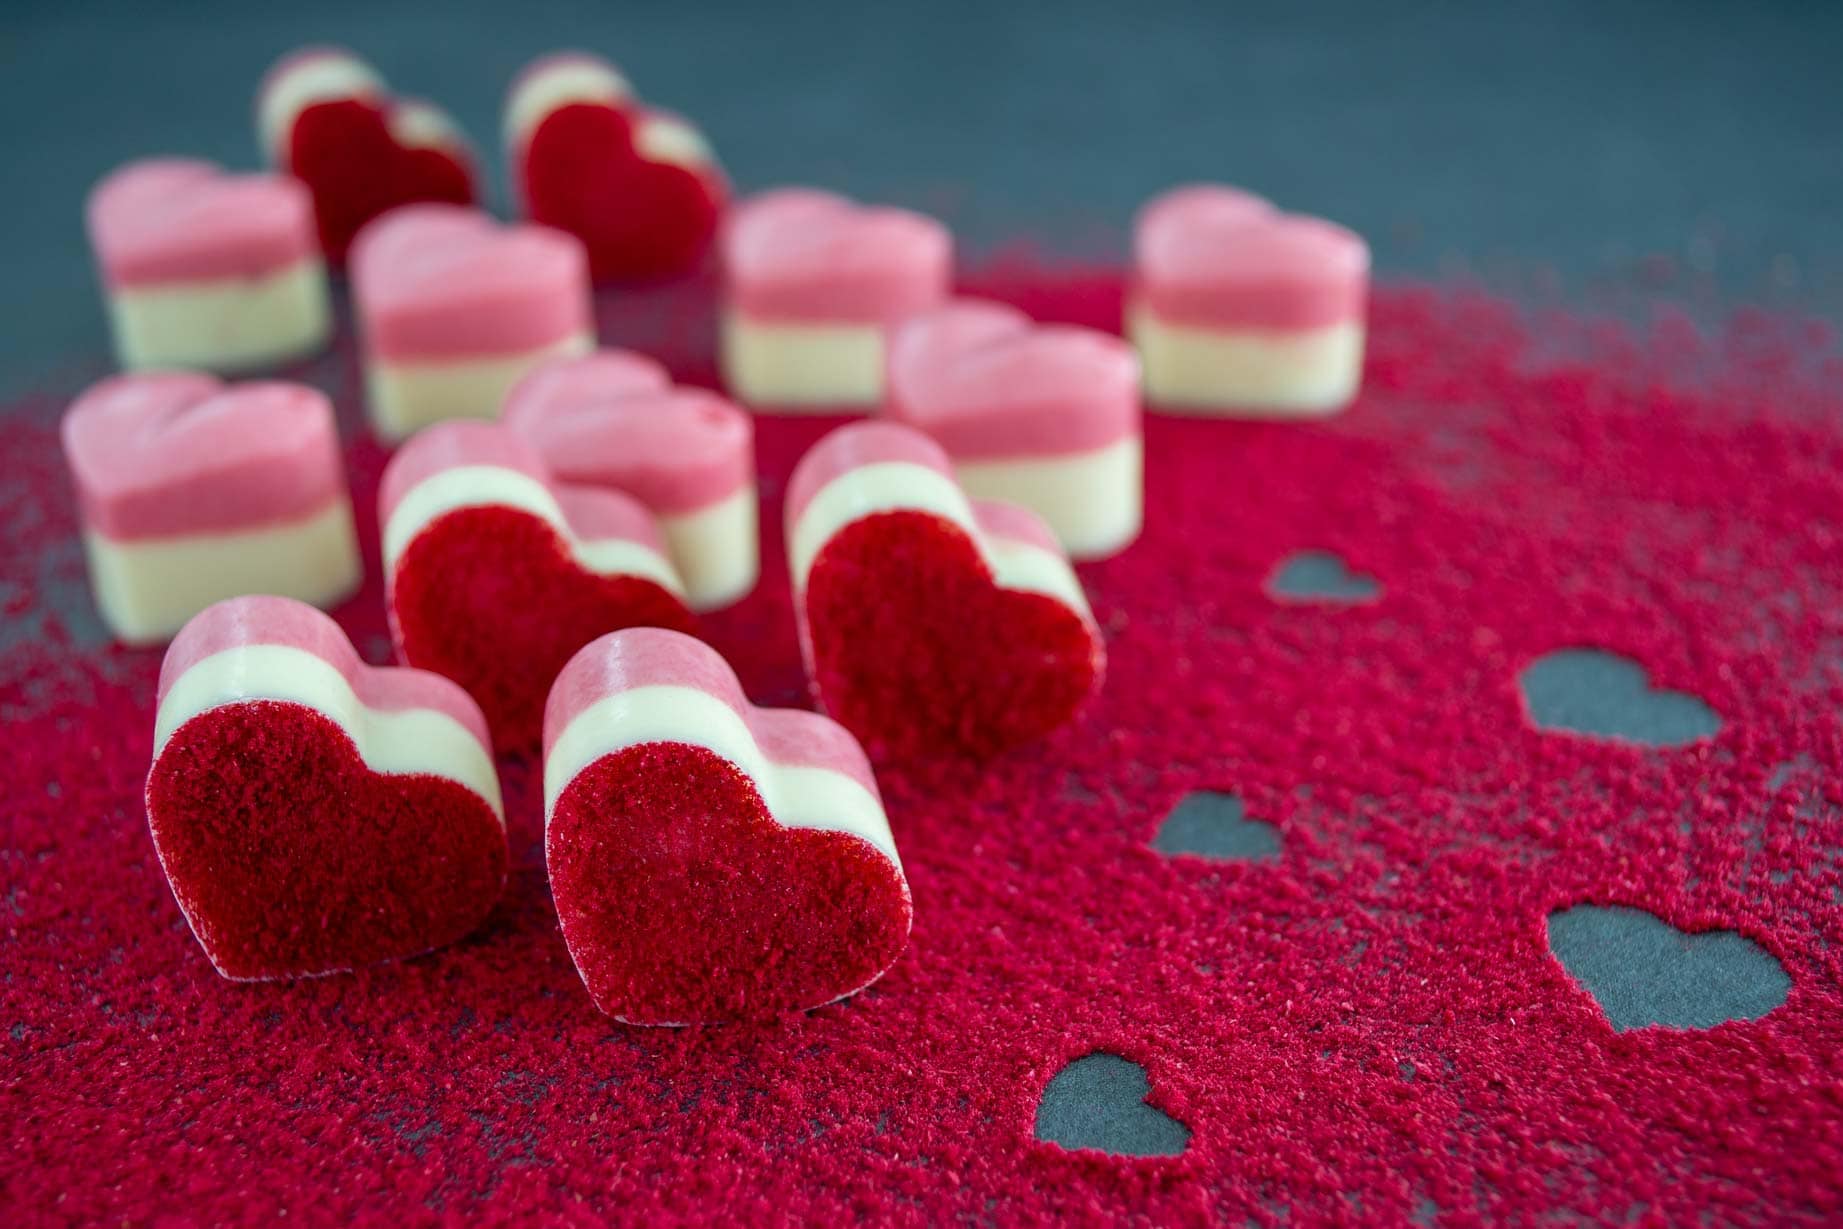 Himbeerpralinen aus rosa und weißer Schokolade in Form von kleinen Herzen liegen auf einer mit rotem Himbeerpulver bestreuten, dunklen Platte. Im Himbeerpulver sind kleine Herzen.